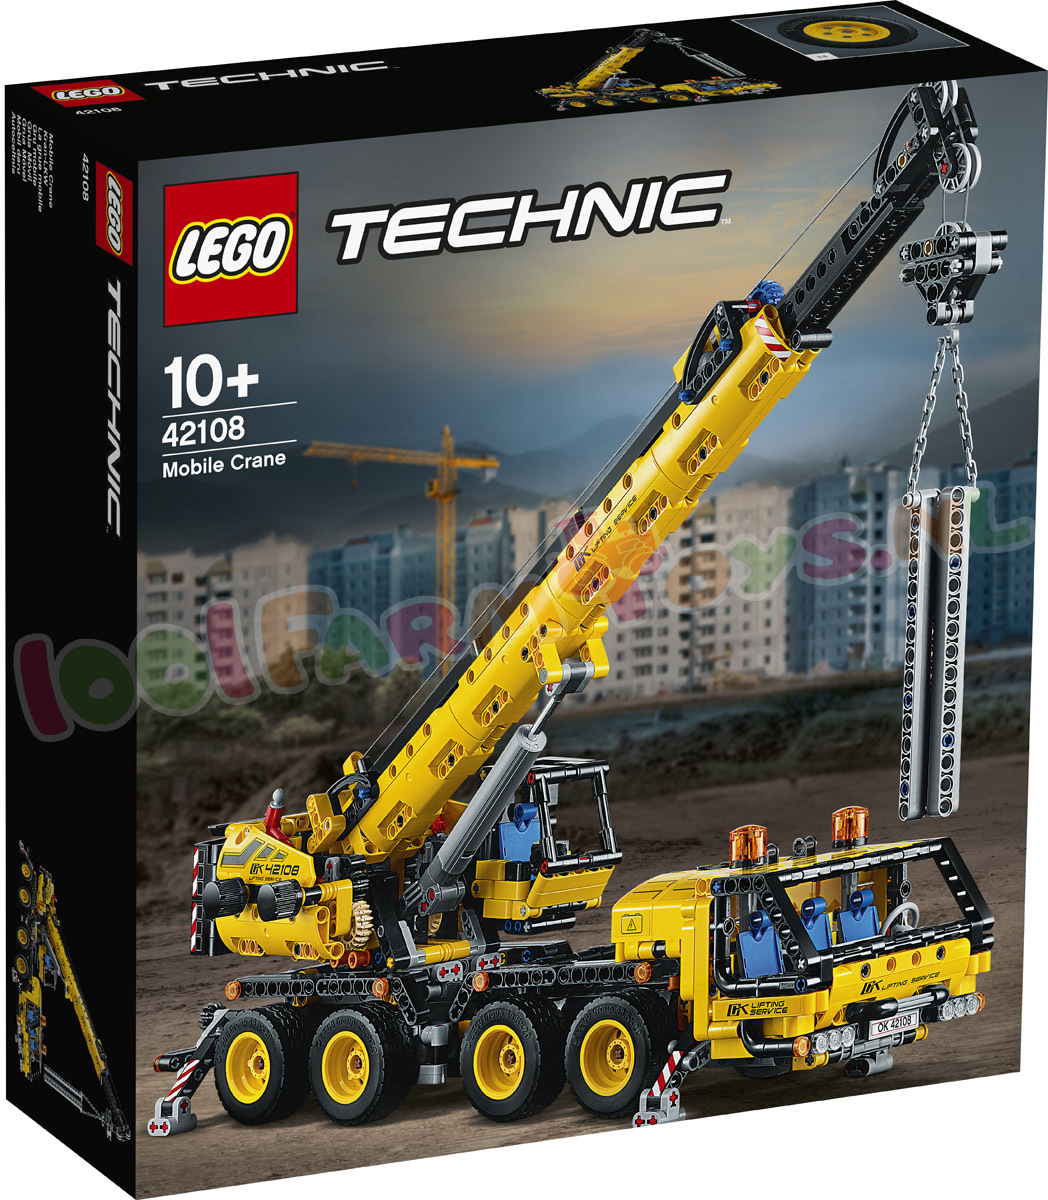 LEGO Mobiele kraan - 42108 - Uitverkocht Farm - 1001Farmtoys landbouwspeelgoed - LET OP dit product wordt meer geproduceerd door LEGO OP